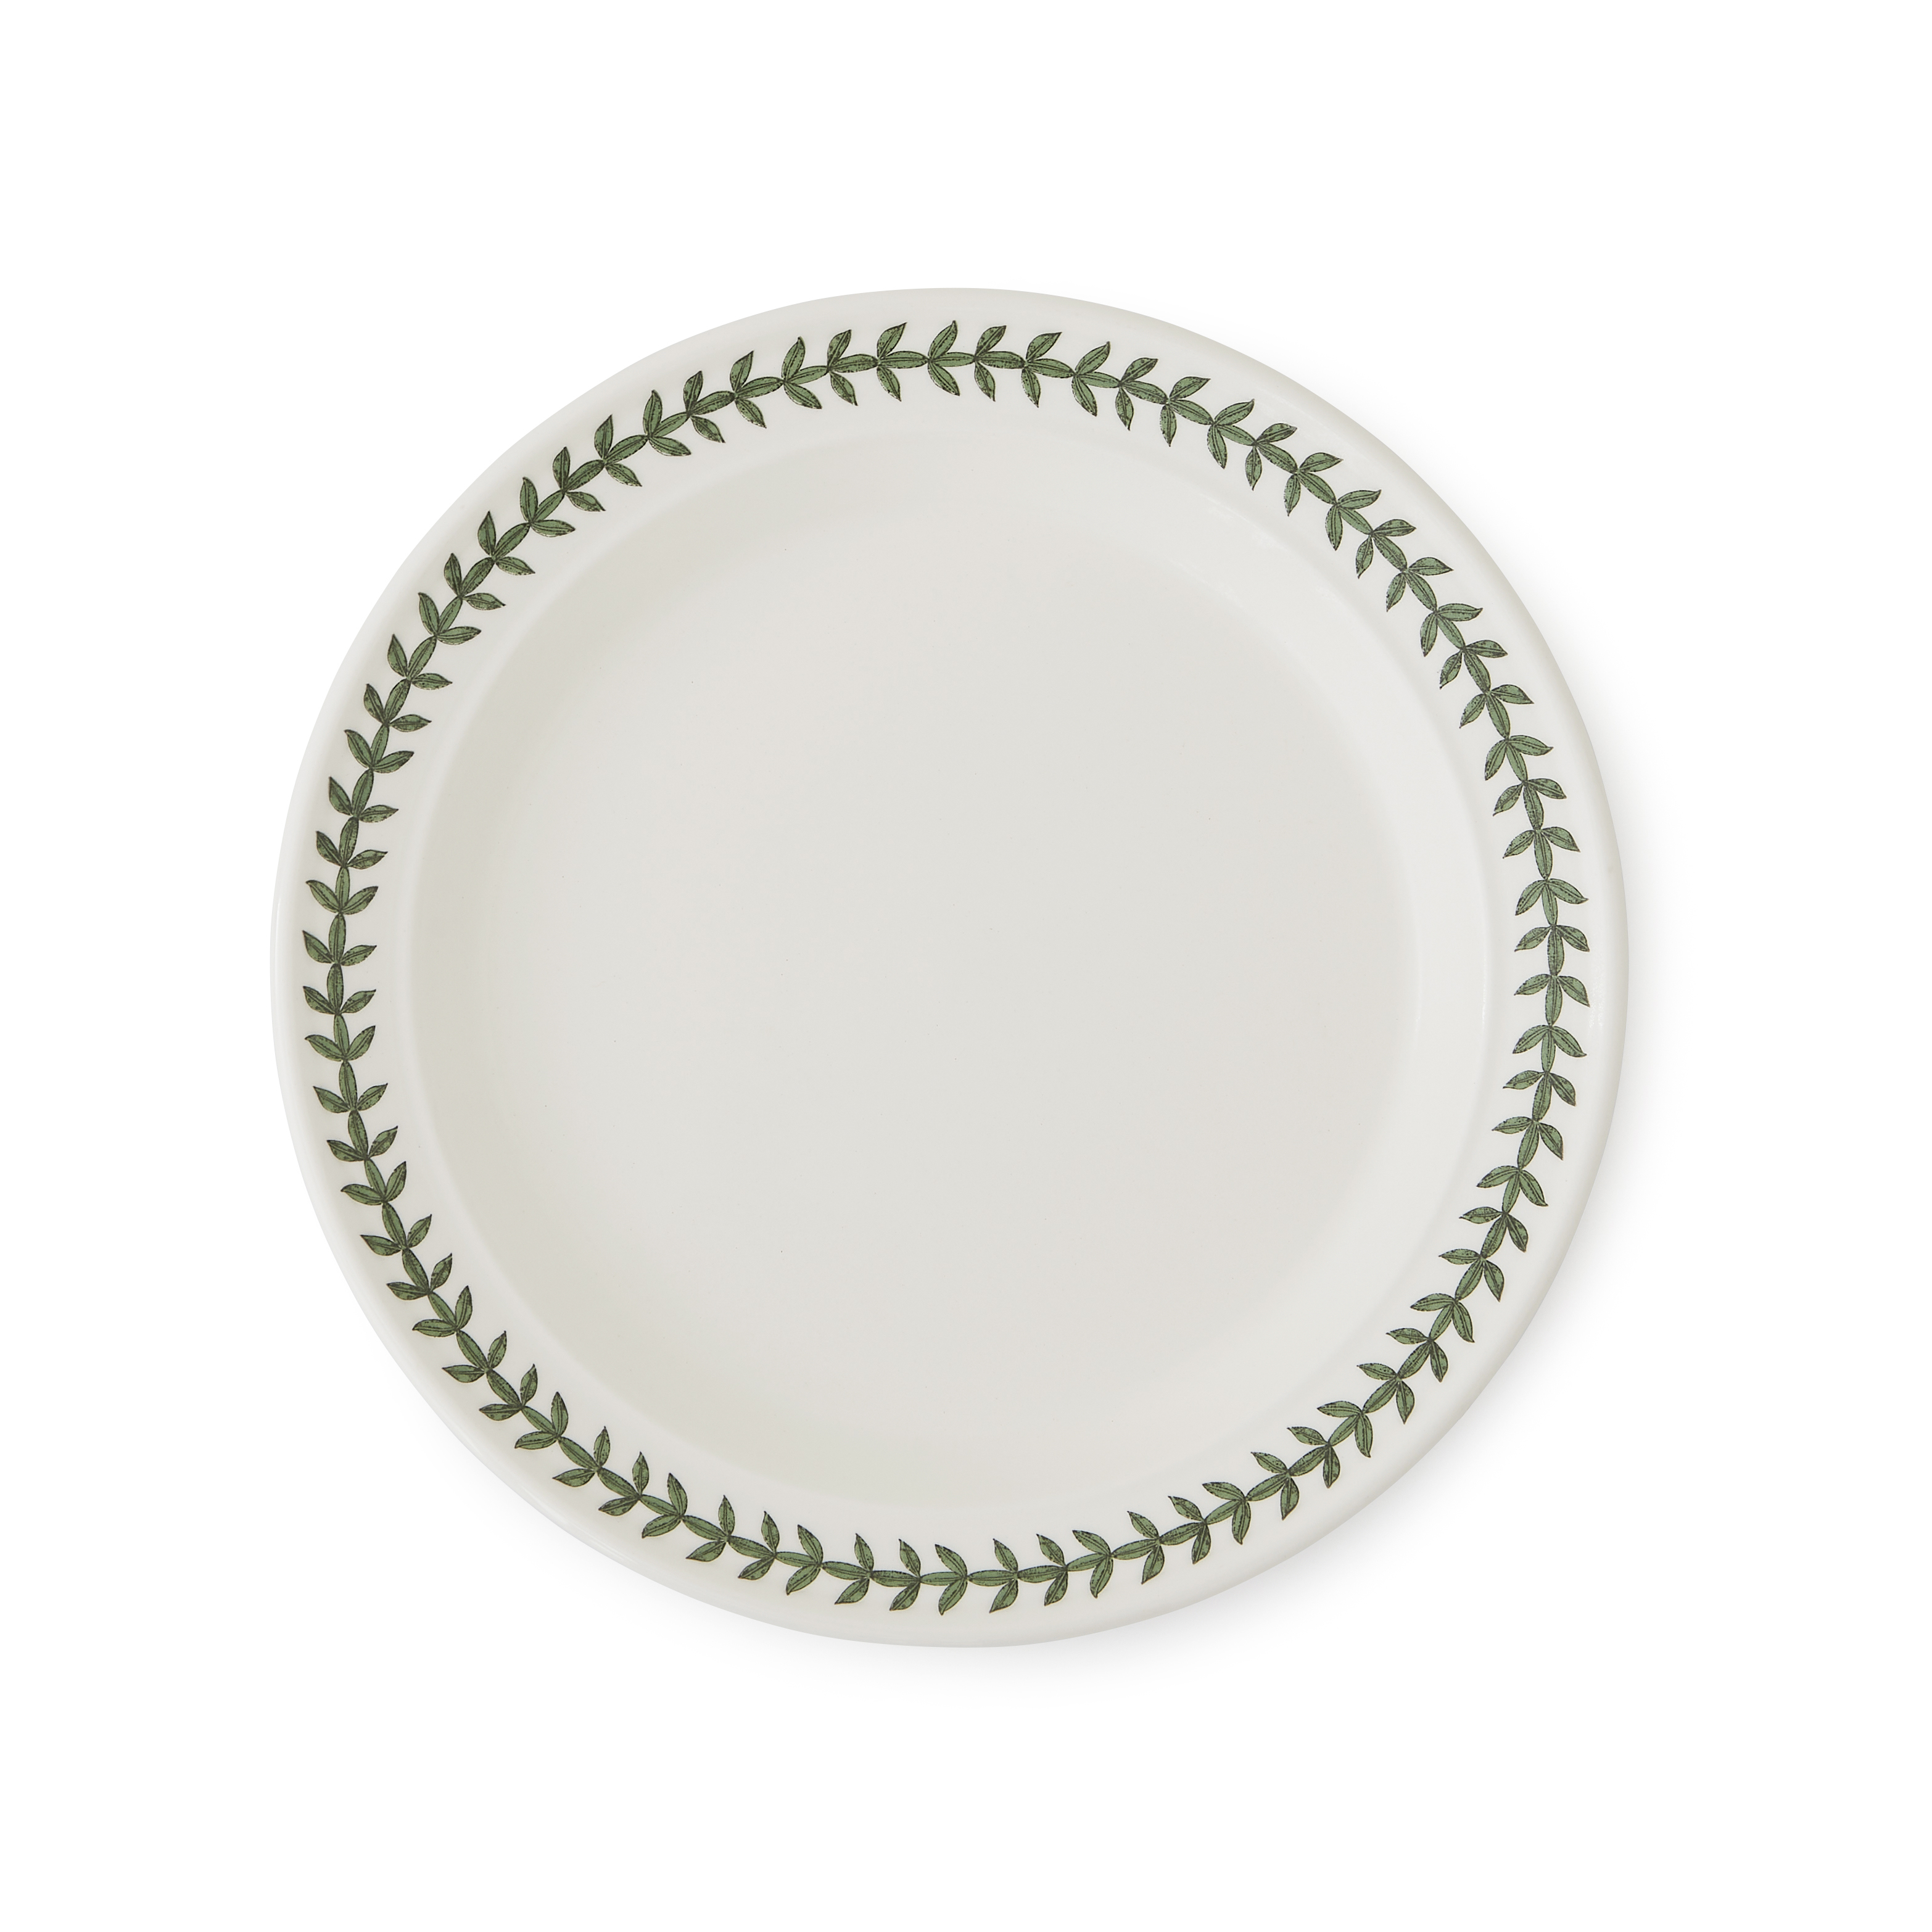 Laurel Leaf Set of 6 Dinner Plates image number null